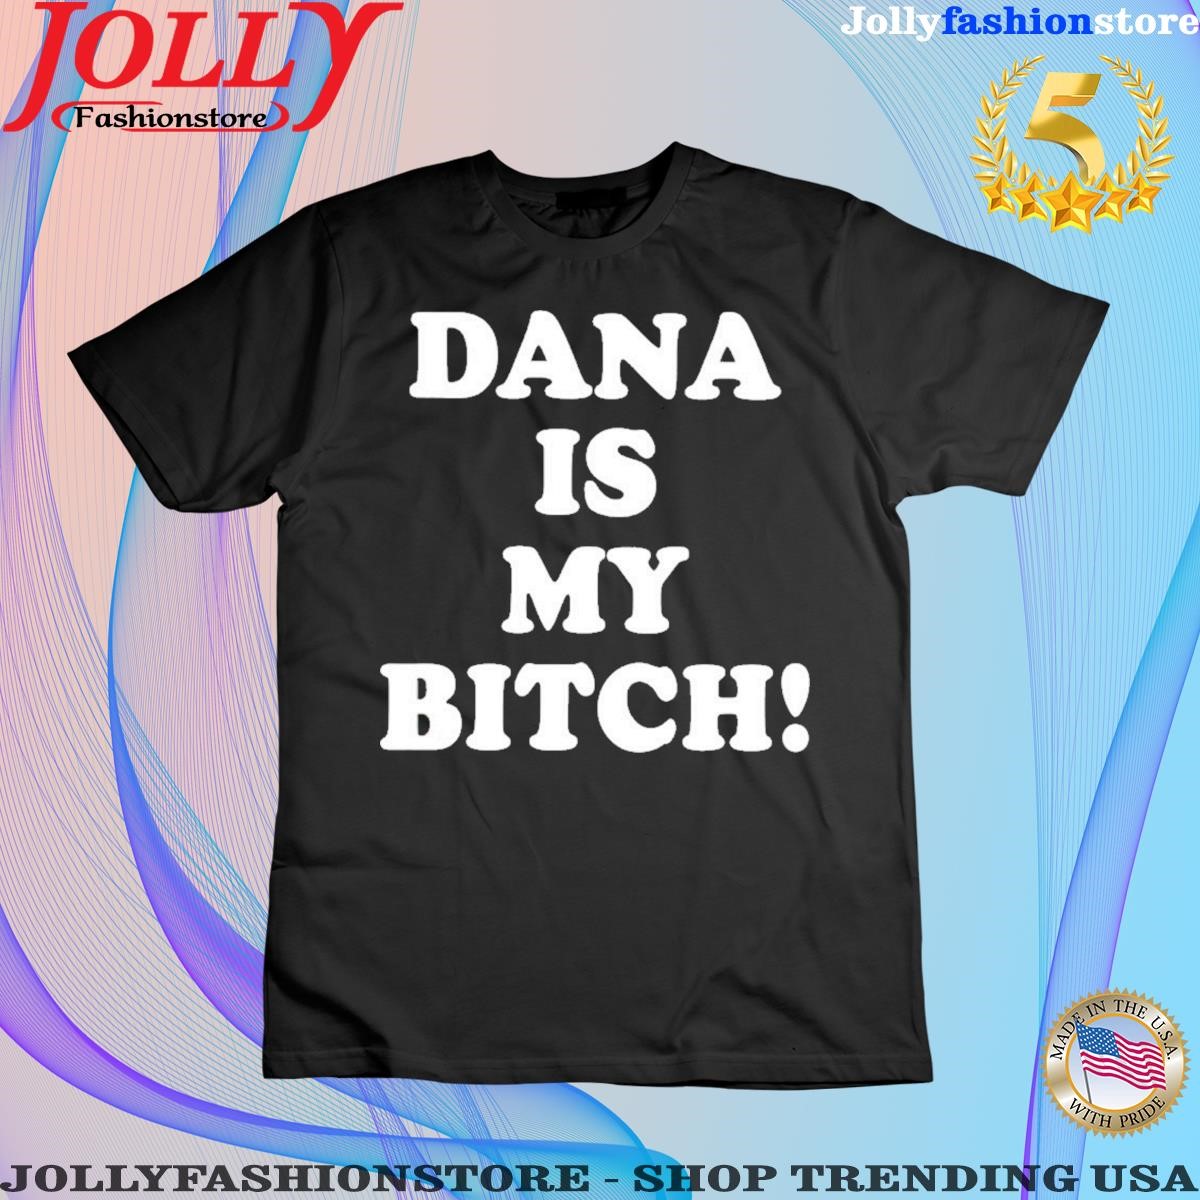 Dana is my bitch women tee shirt.png